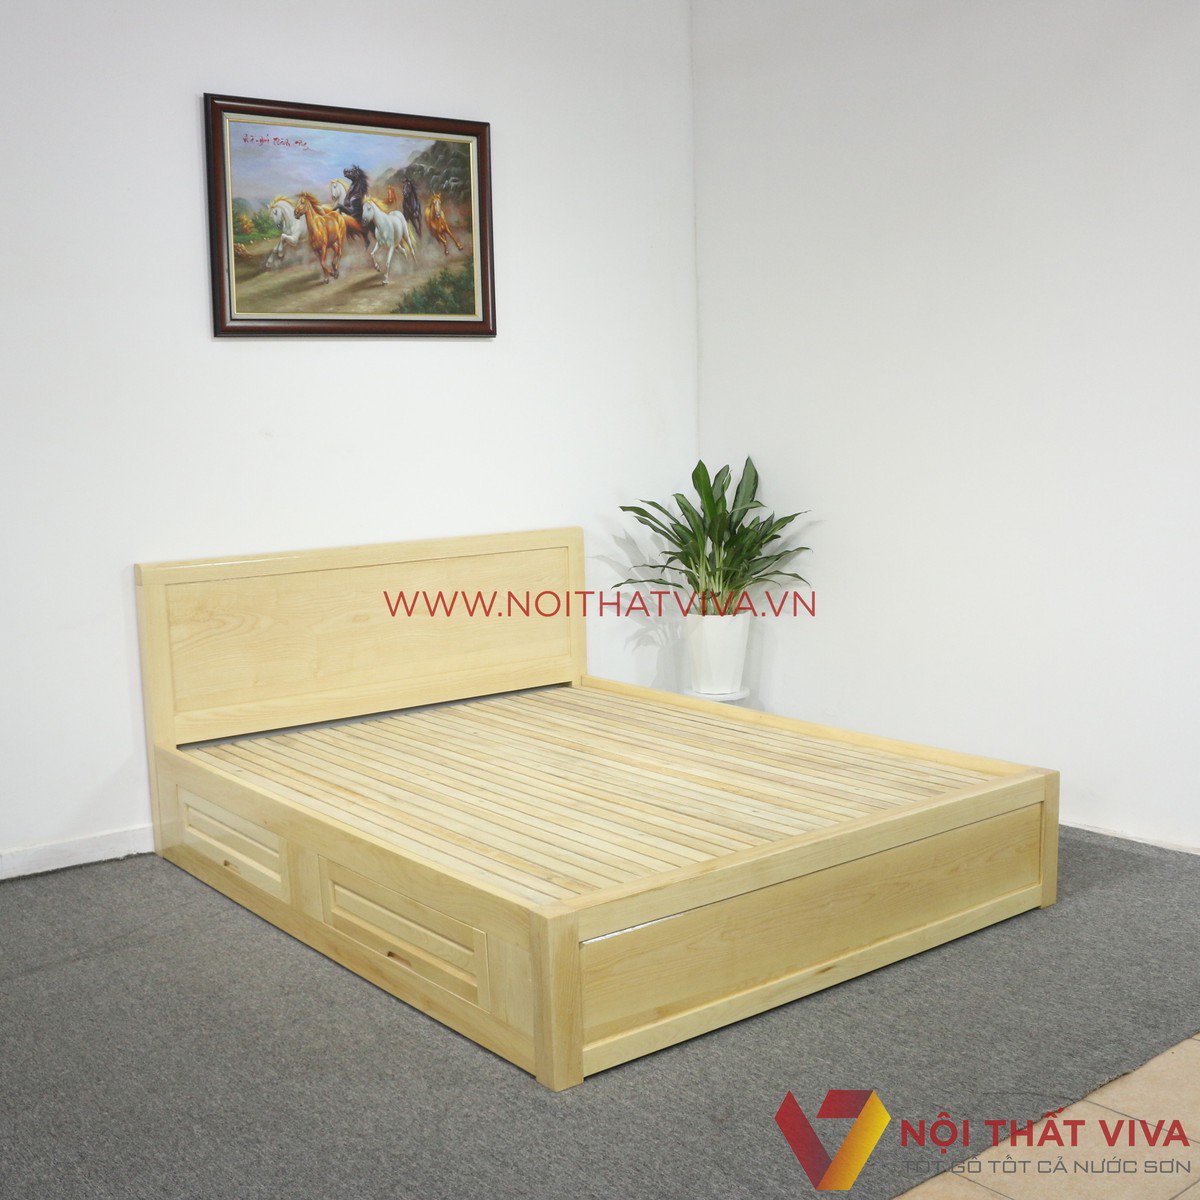 giường ngủ gỗ sồi hiện đại